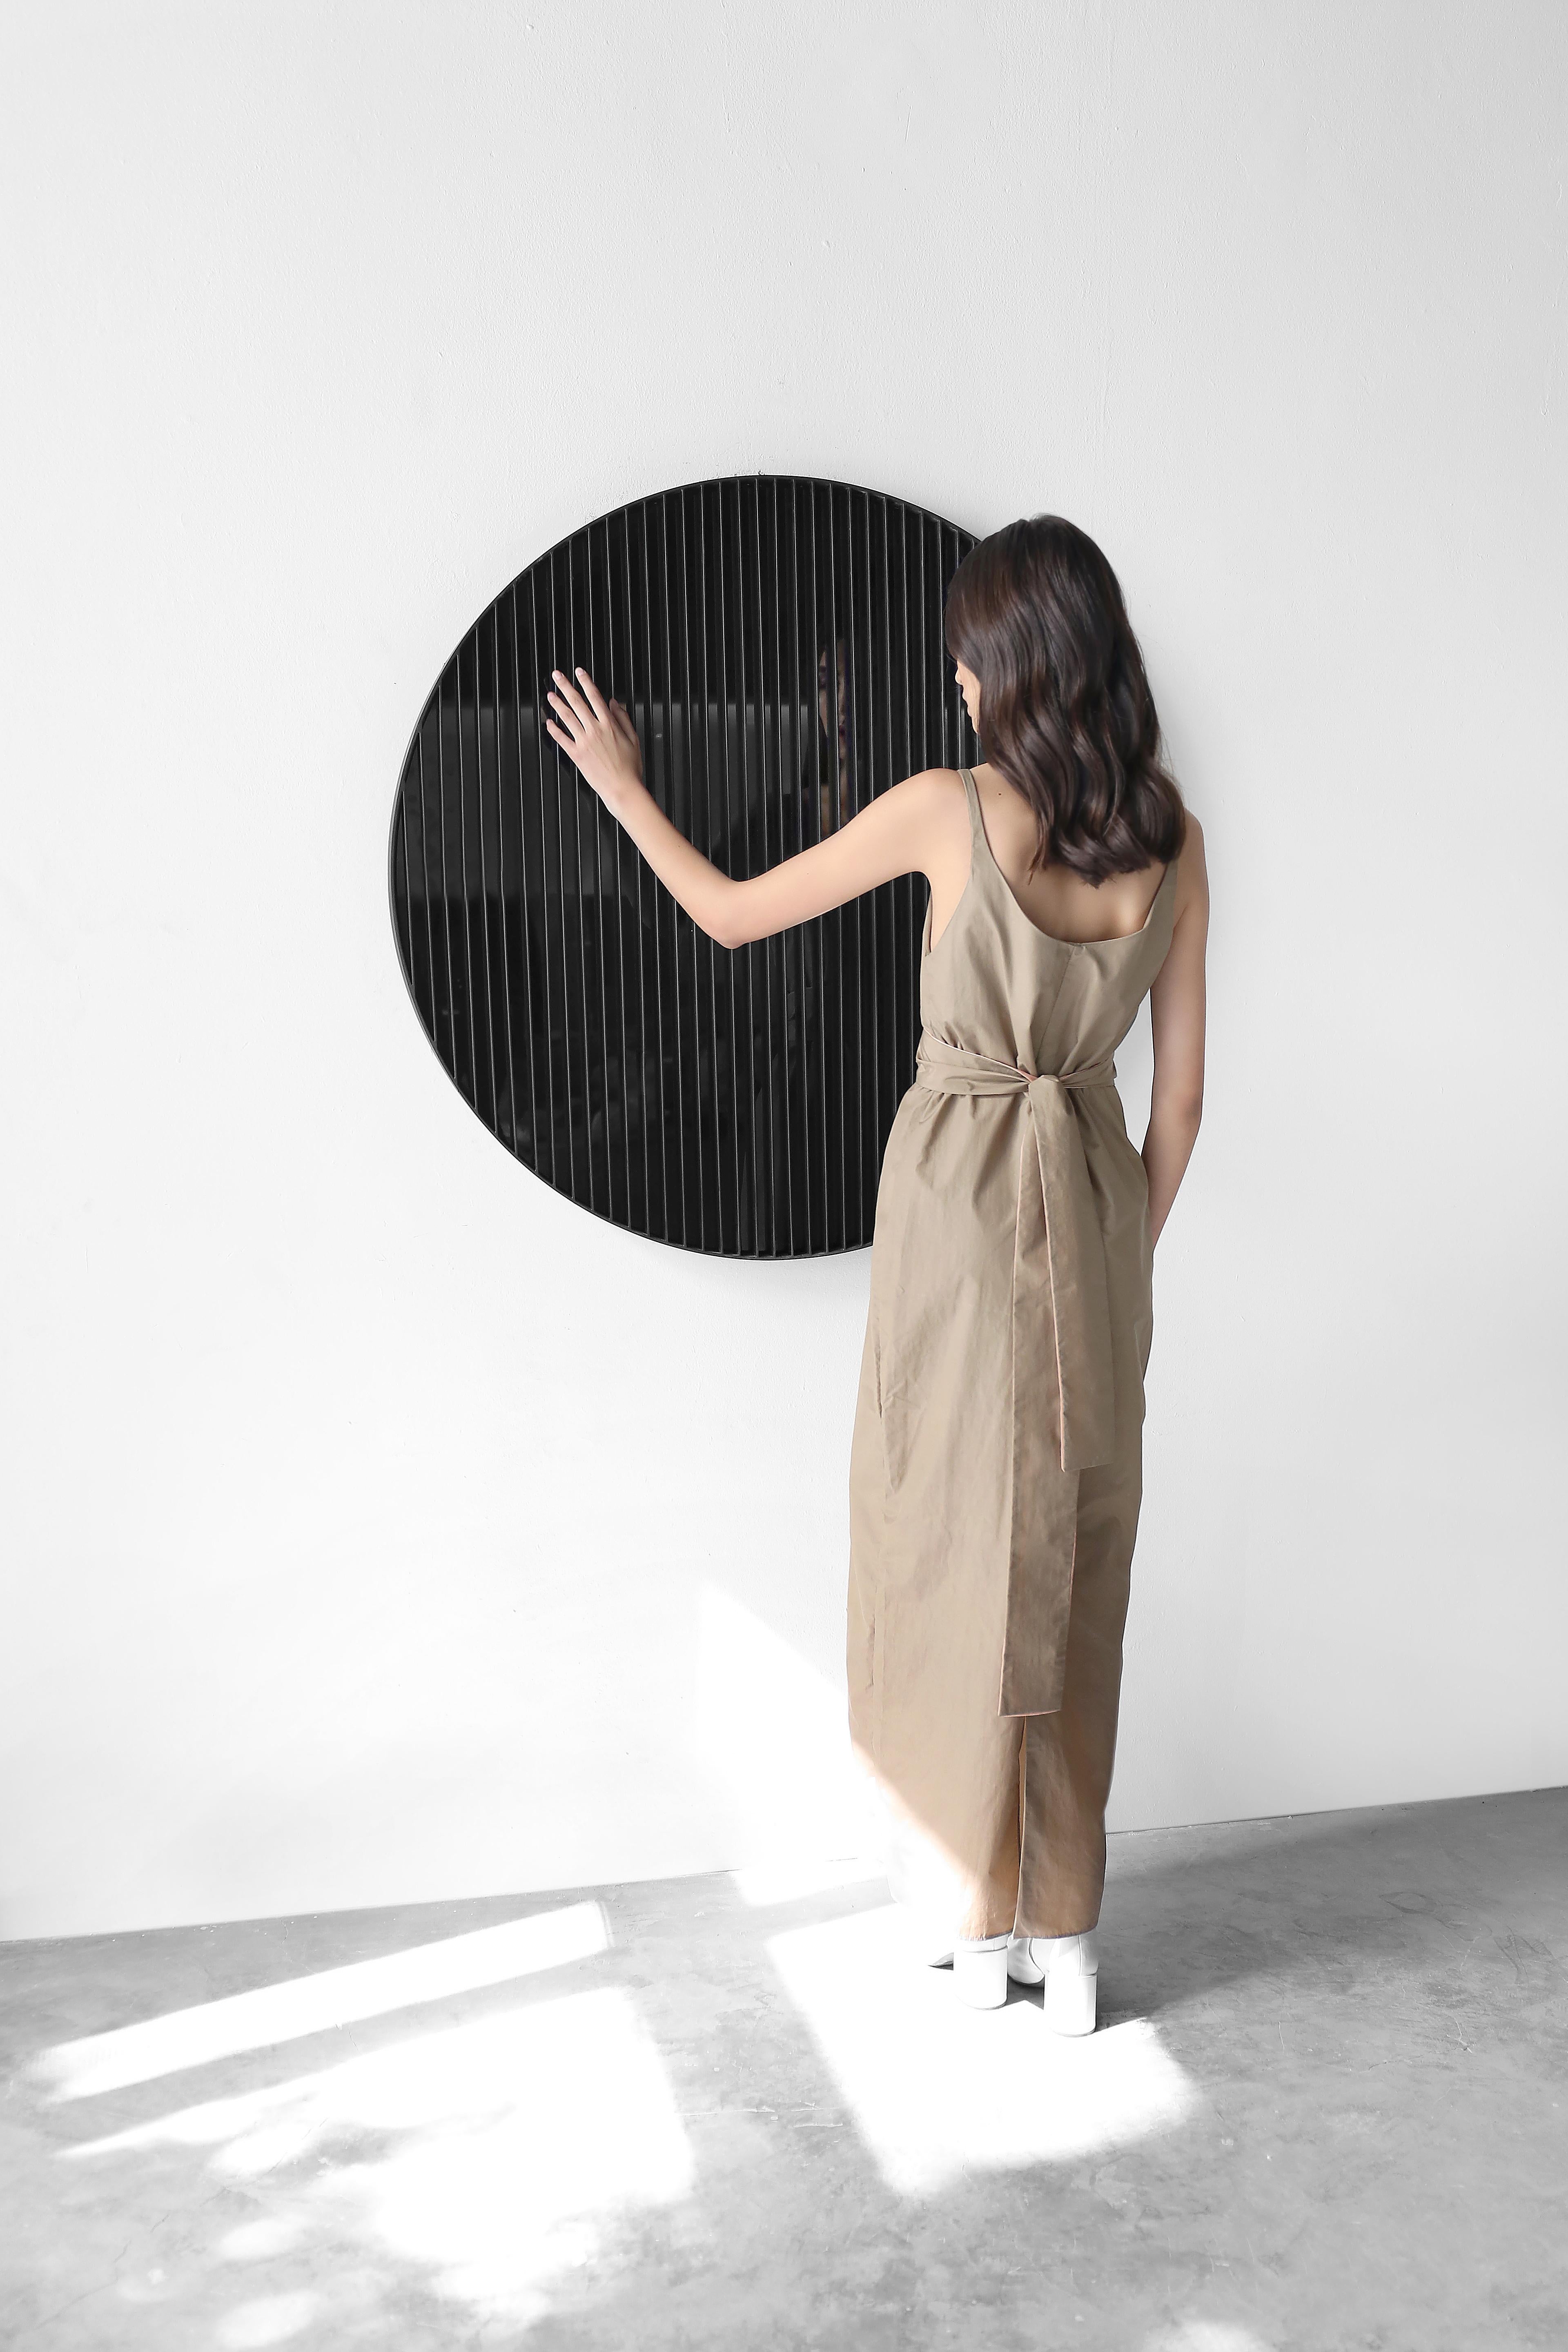 Lois du mouvement Grand miroir décoratif circulaire par Joel Escalona

Laws of Motion est une collection de meubles qui, à travers une série de typologies différentes, explore des concepts tels que la force, la gravité et le mouvement. Chacune de